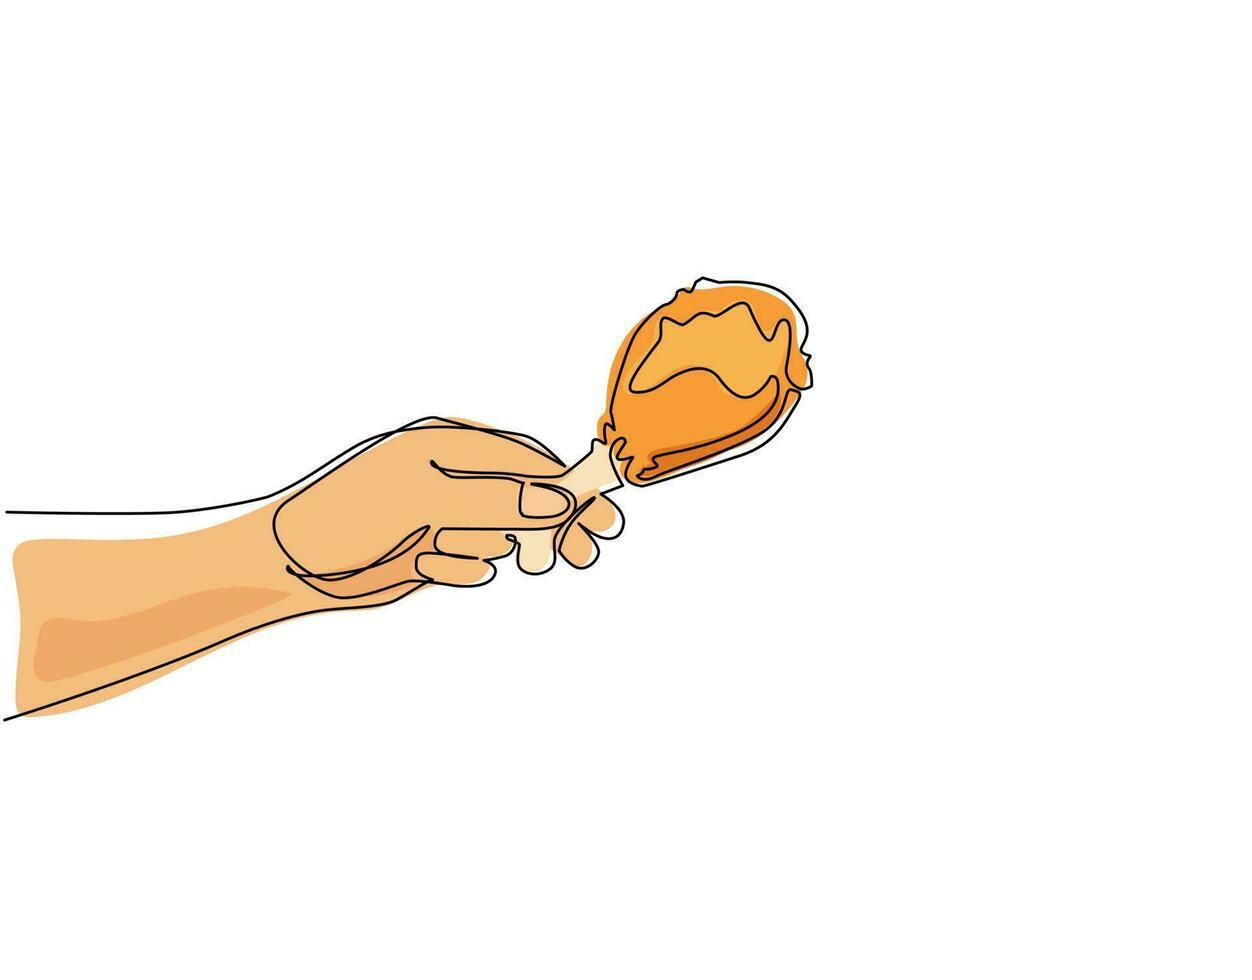 mano dell'uomo di disegno continuo di una linea che tiene la coscia di pollo fritto, stile di schizzo. mano che tiene coscia di pollo fritta, grigliata, arrosto, coscia. illustrazione grafica vettoriale di disegno a linea singola